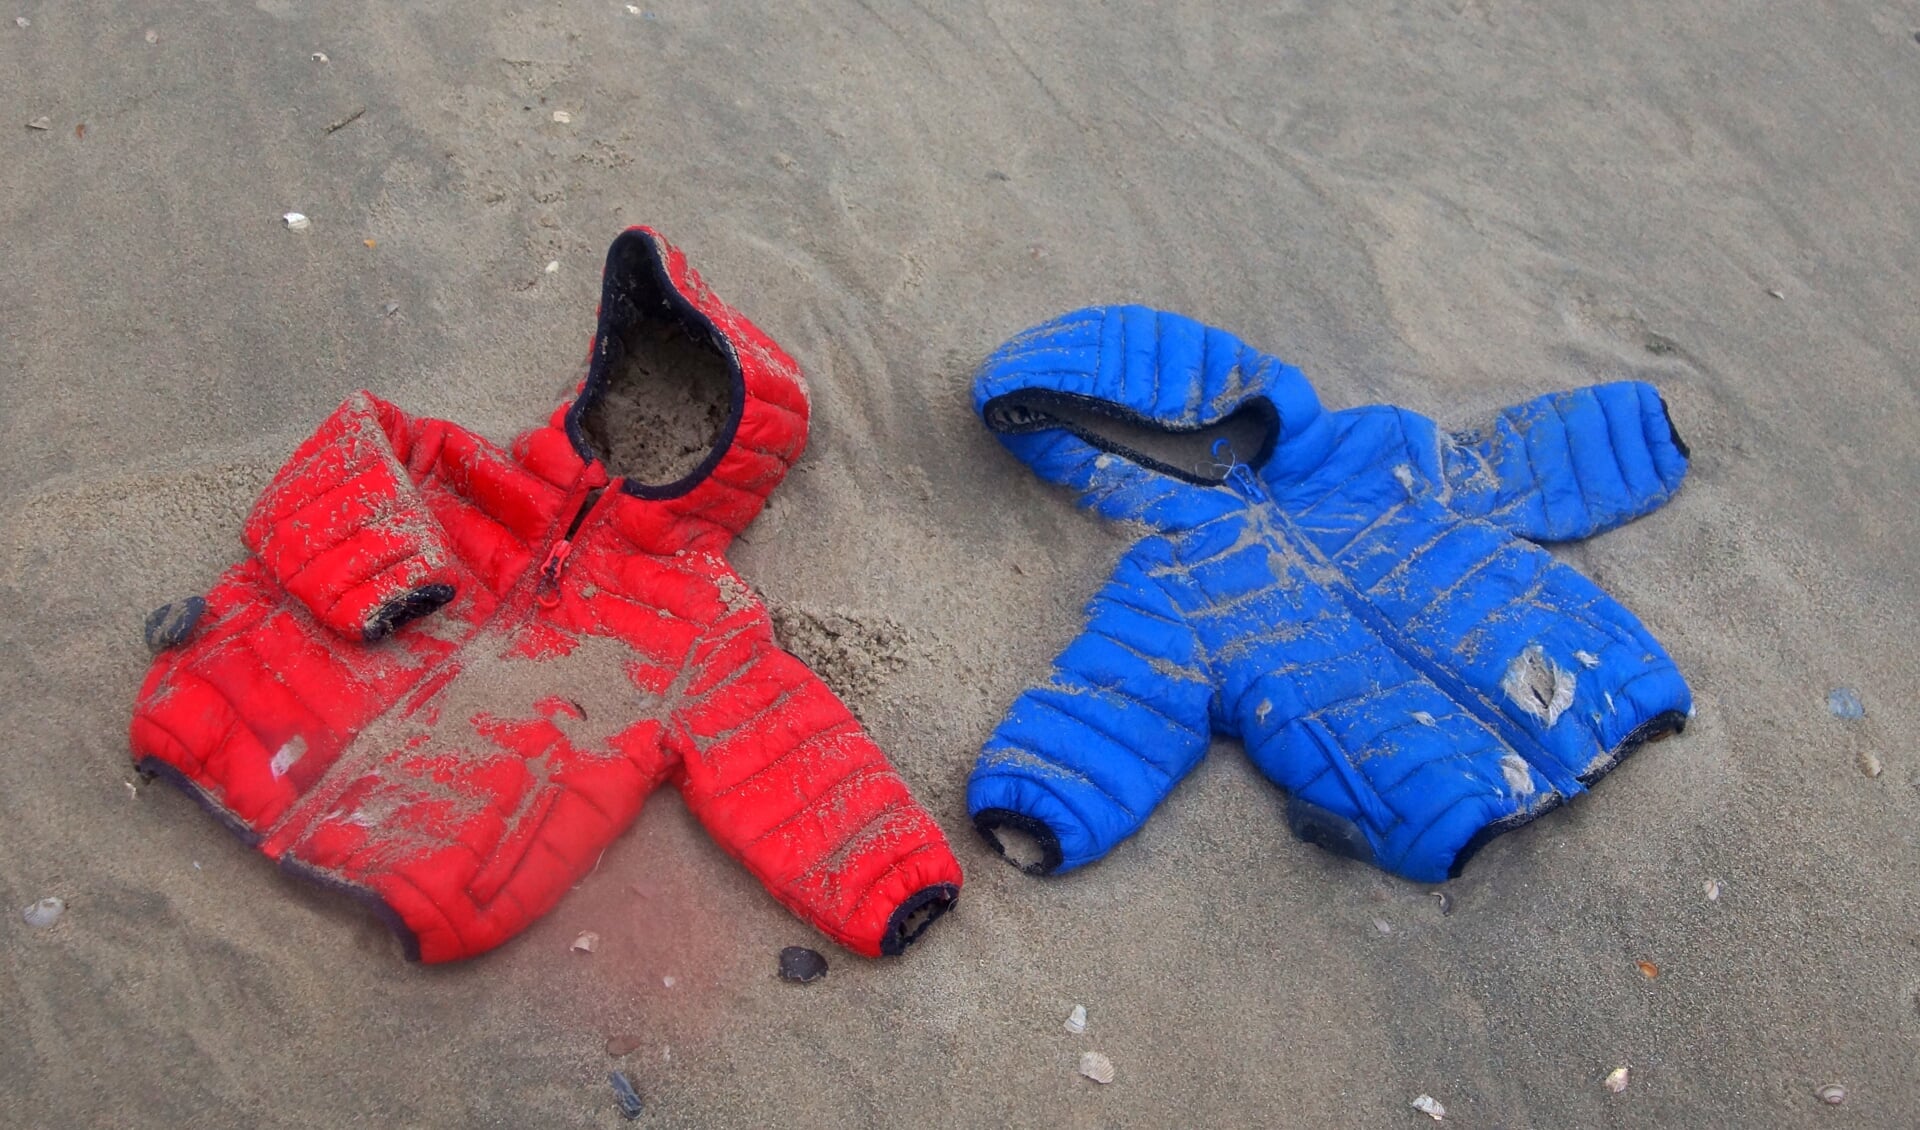 Aangespoelde jassen van de MSC Zoë op het strand bij Paal 8.